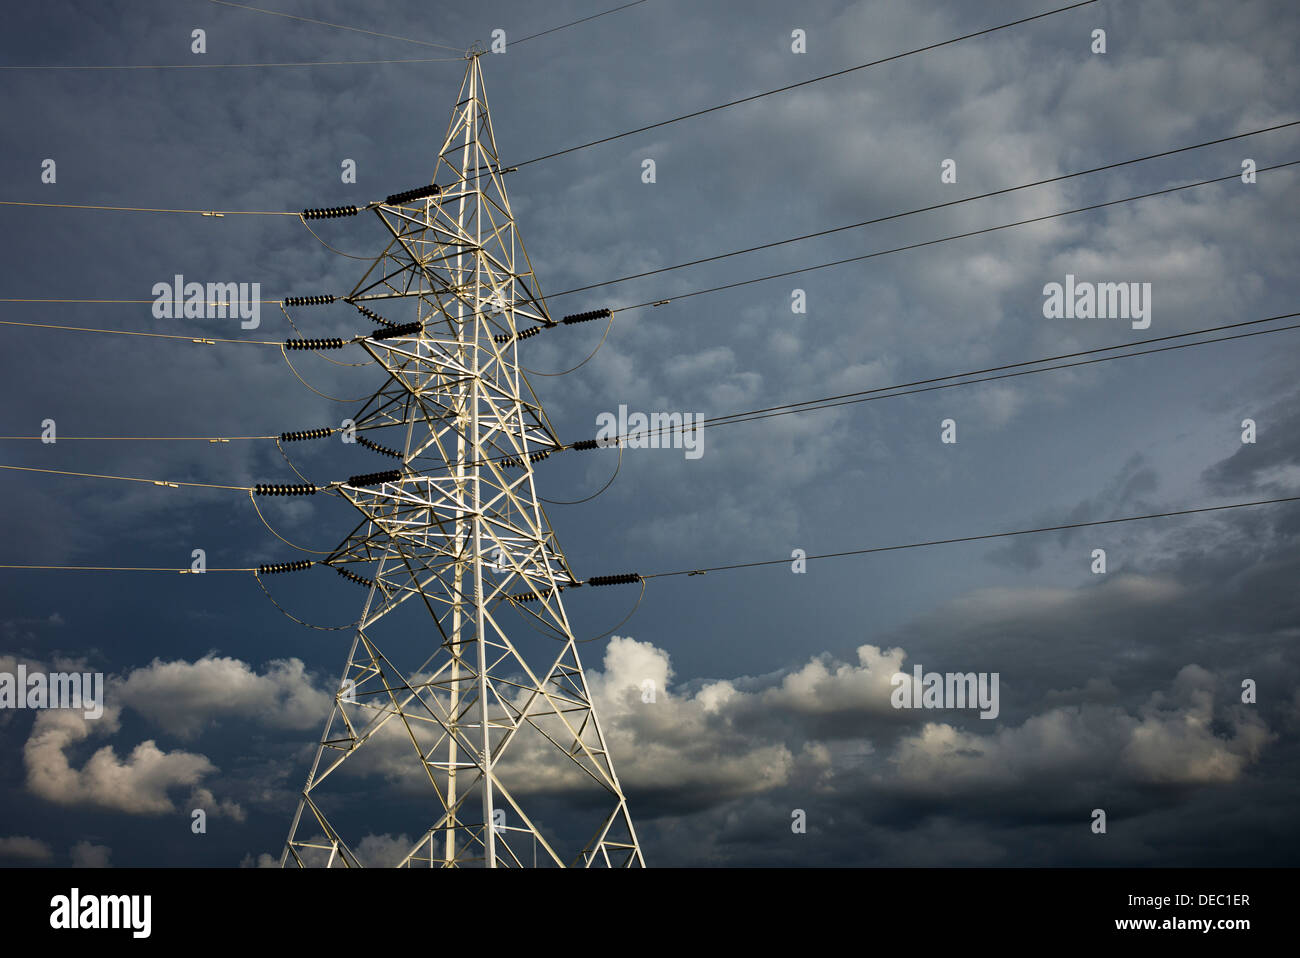 Strommasten und Kabel in der indischen Landschaft gegen einen dunklen Gewitterhimmel. Andhra Pradesh, Indien Stockfoto